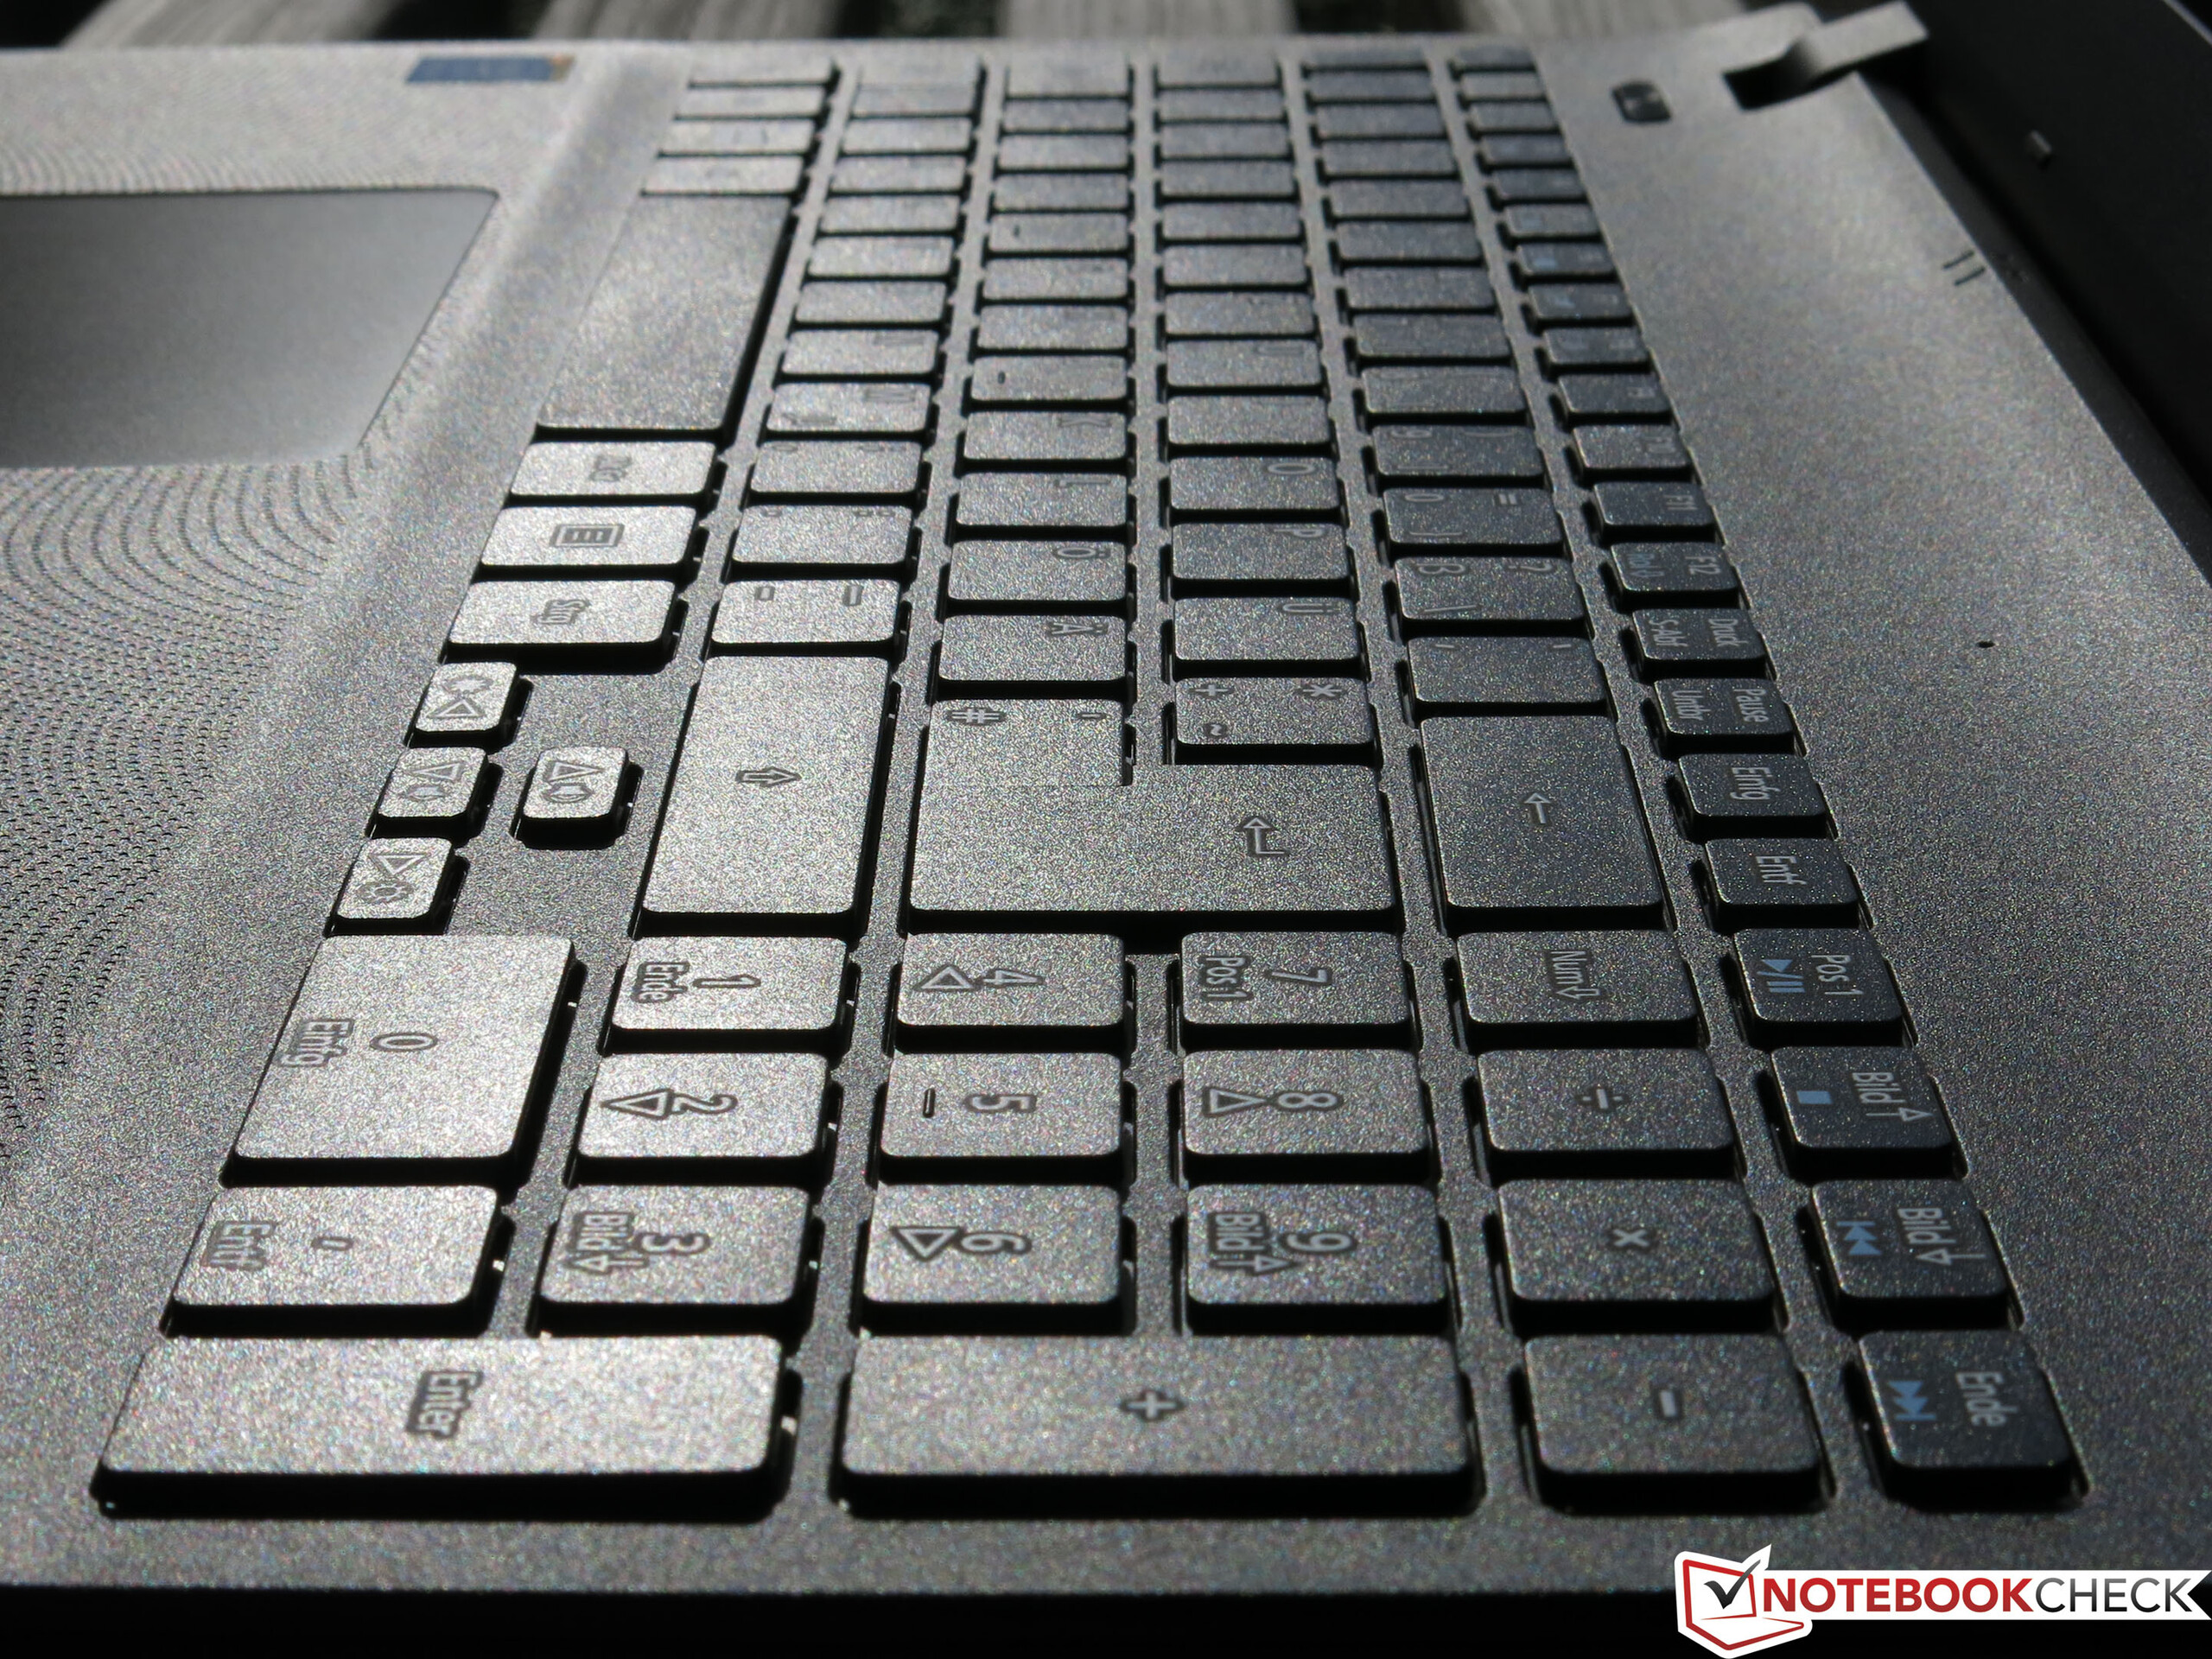 Купить Ноутбук Acer Aspire E15 Start Es1-512-C89t